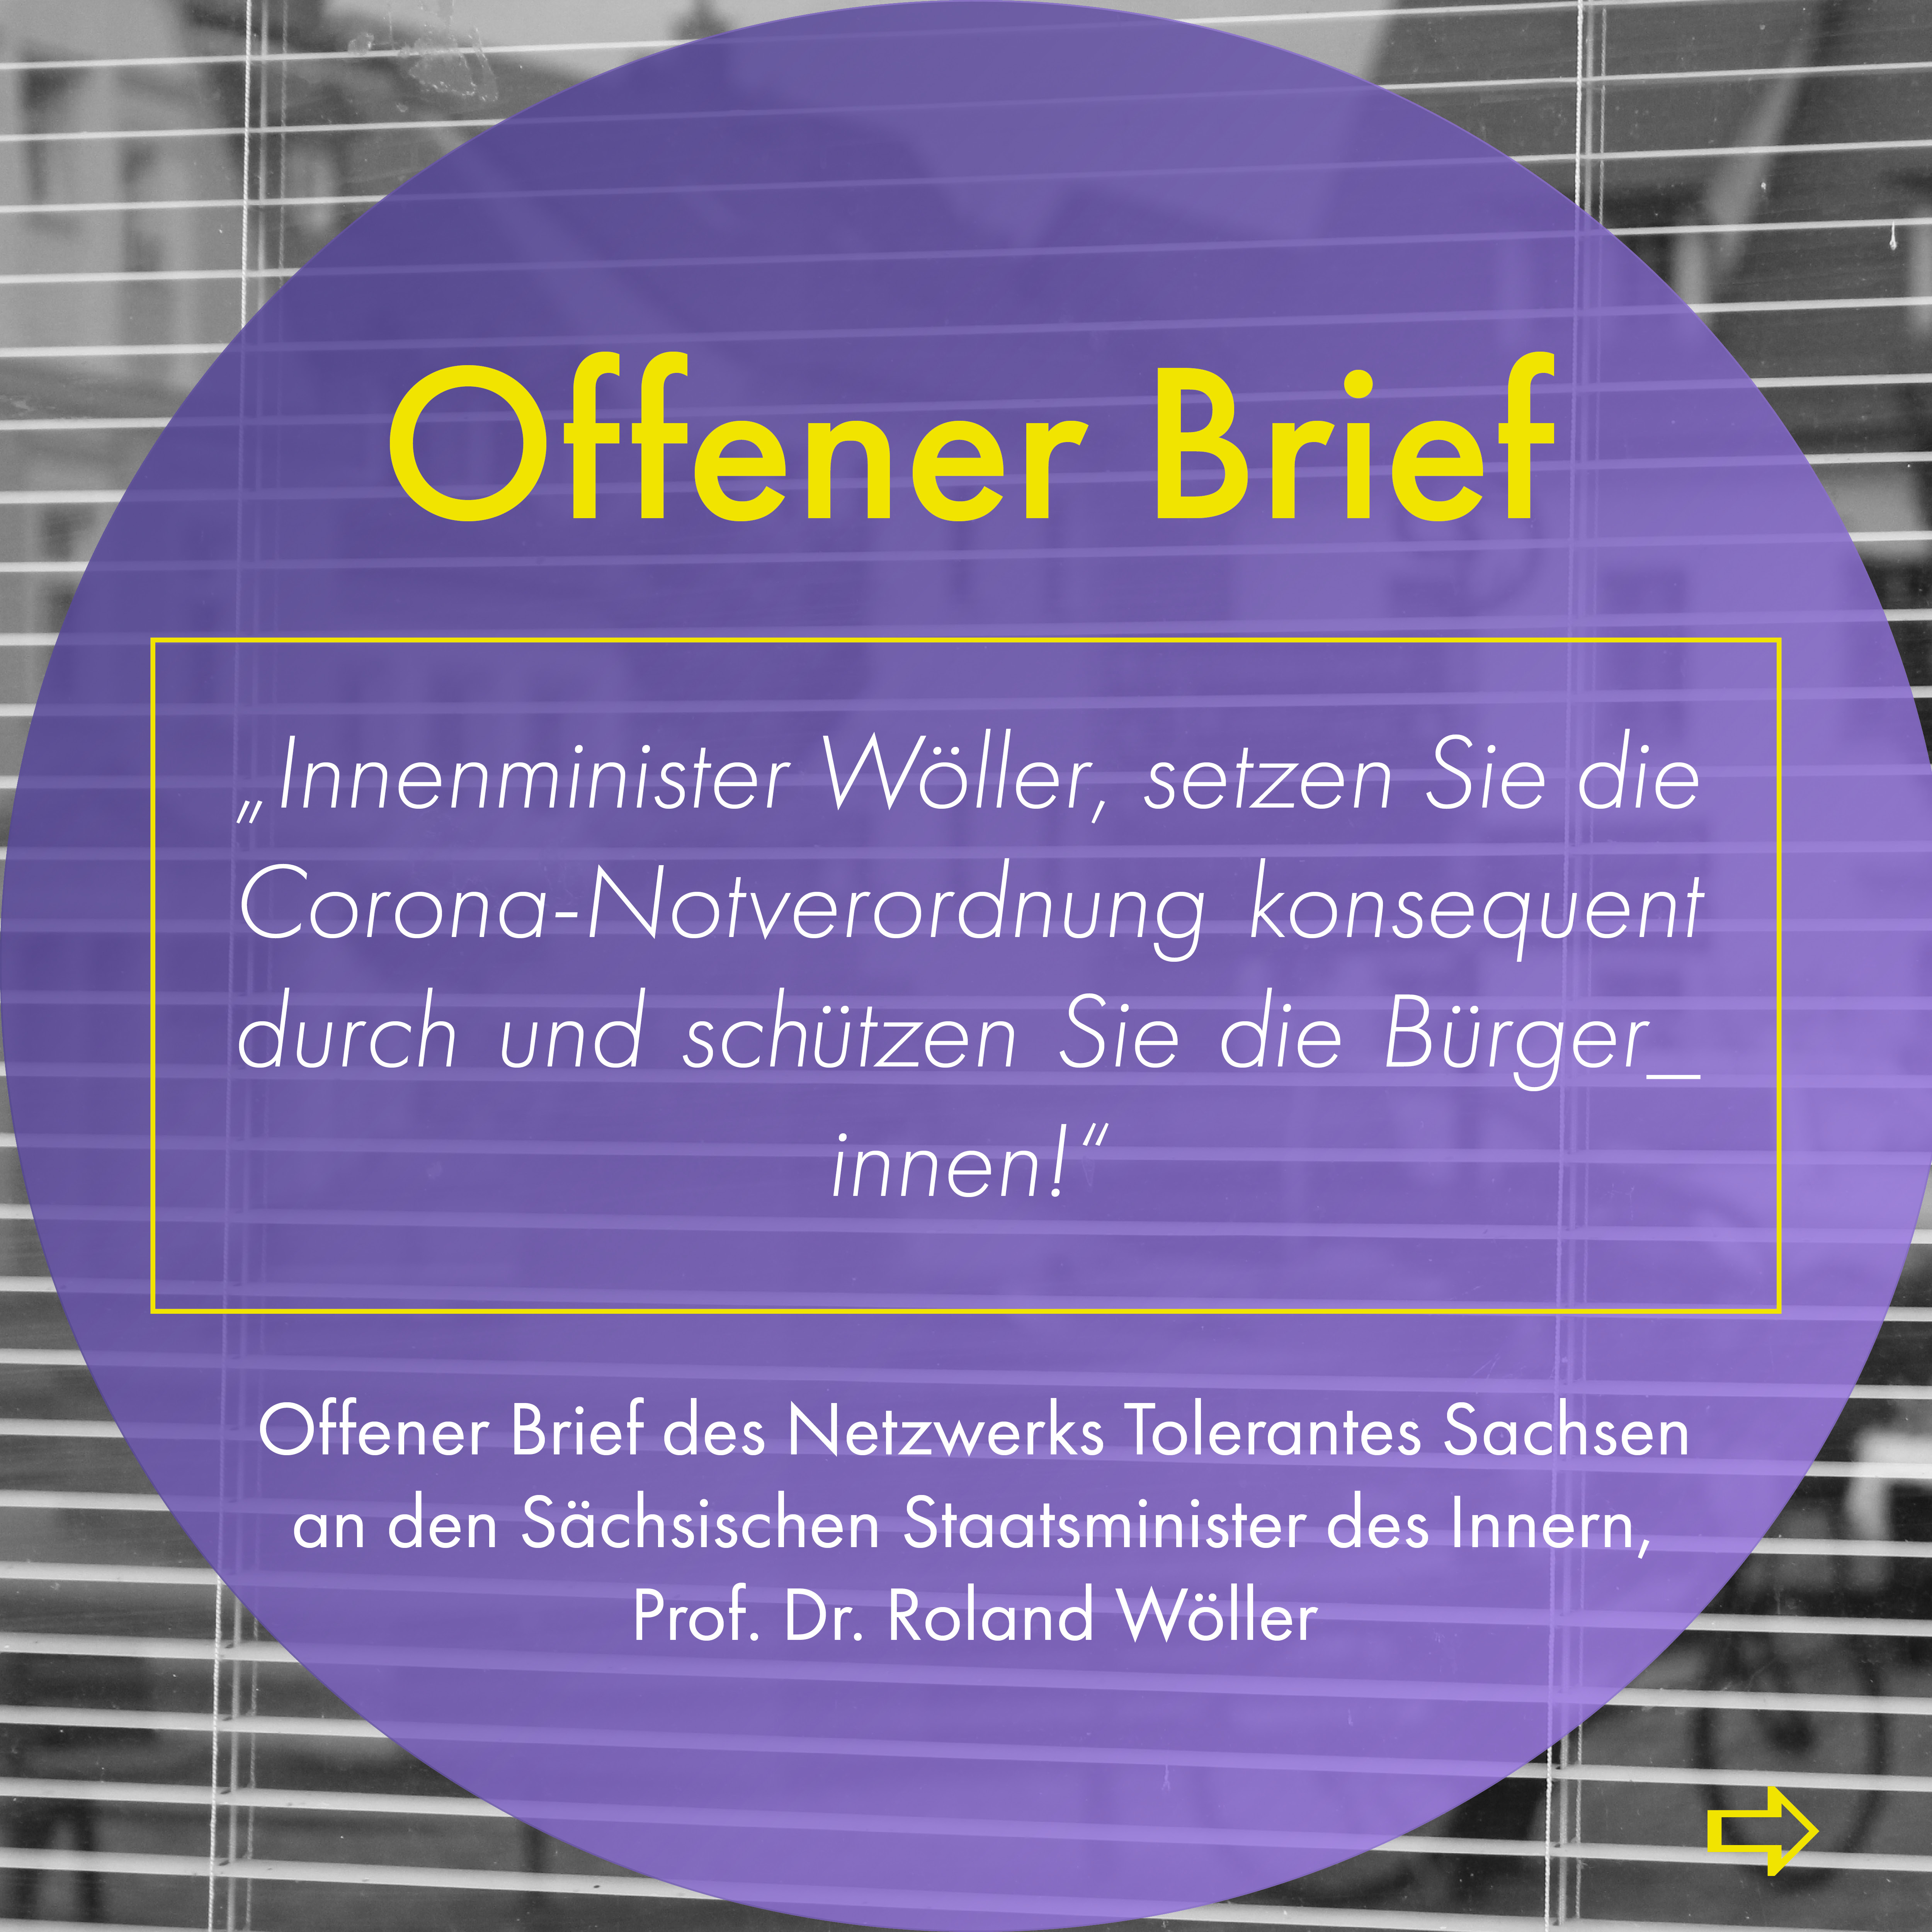 Offener_Brief